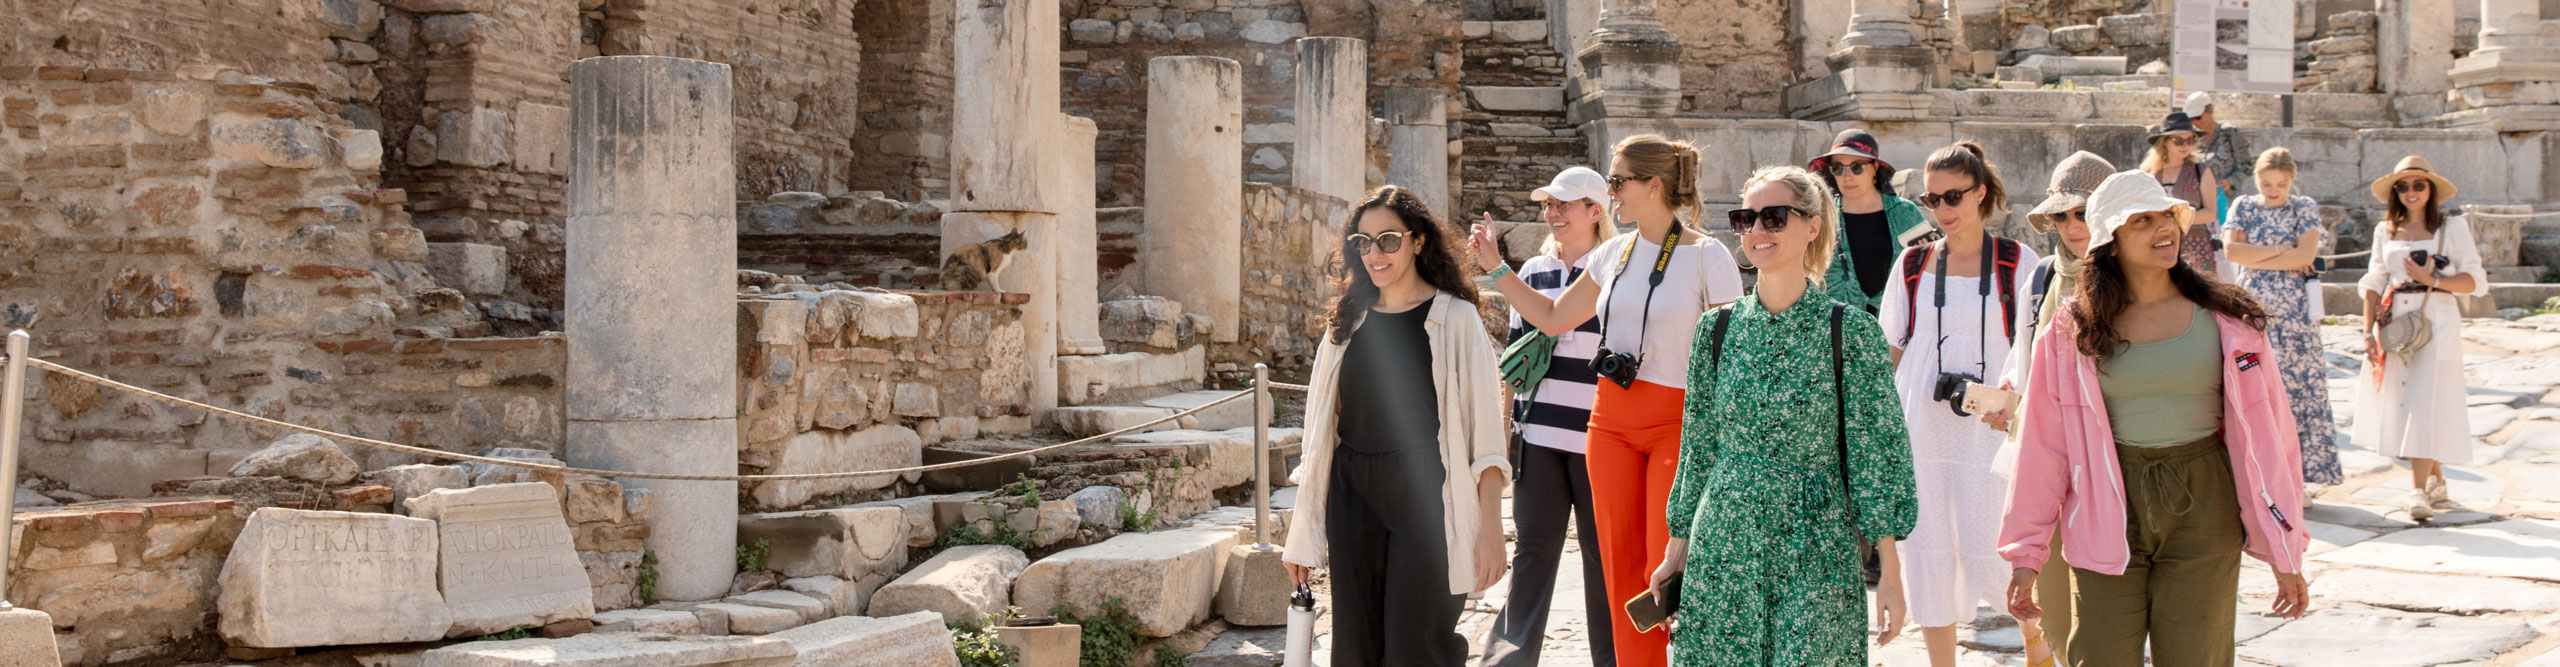 Travellers walking near ephesus ruins in Turkey